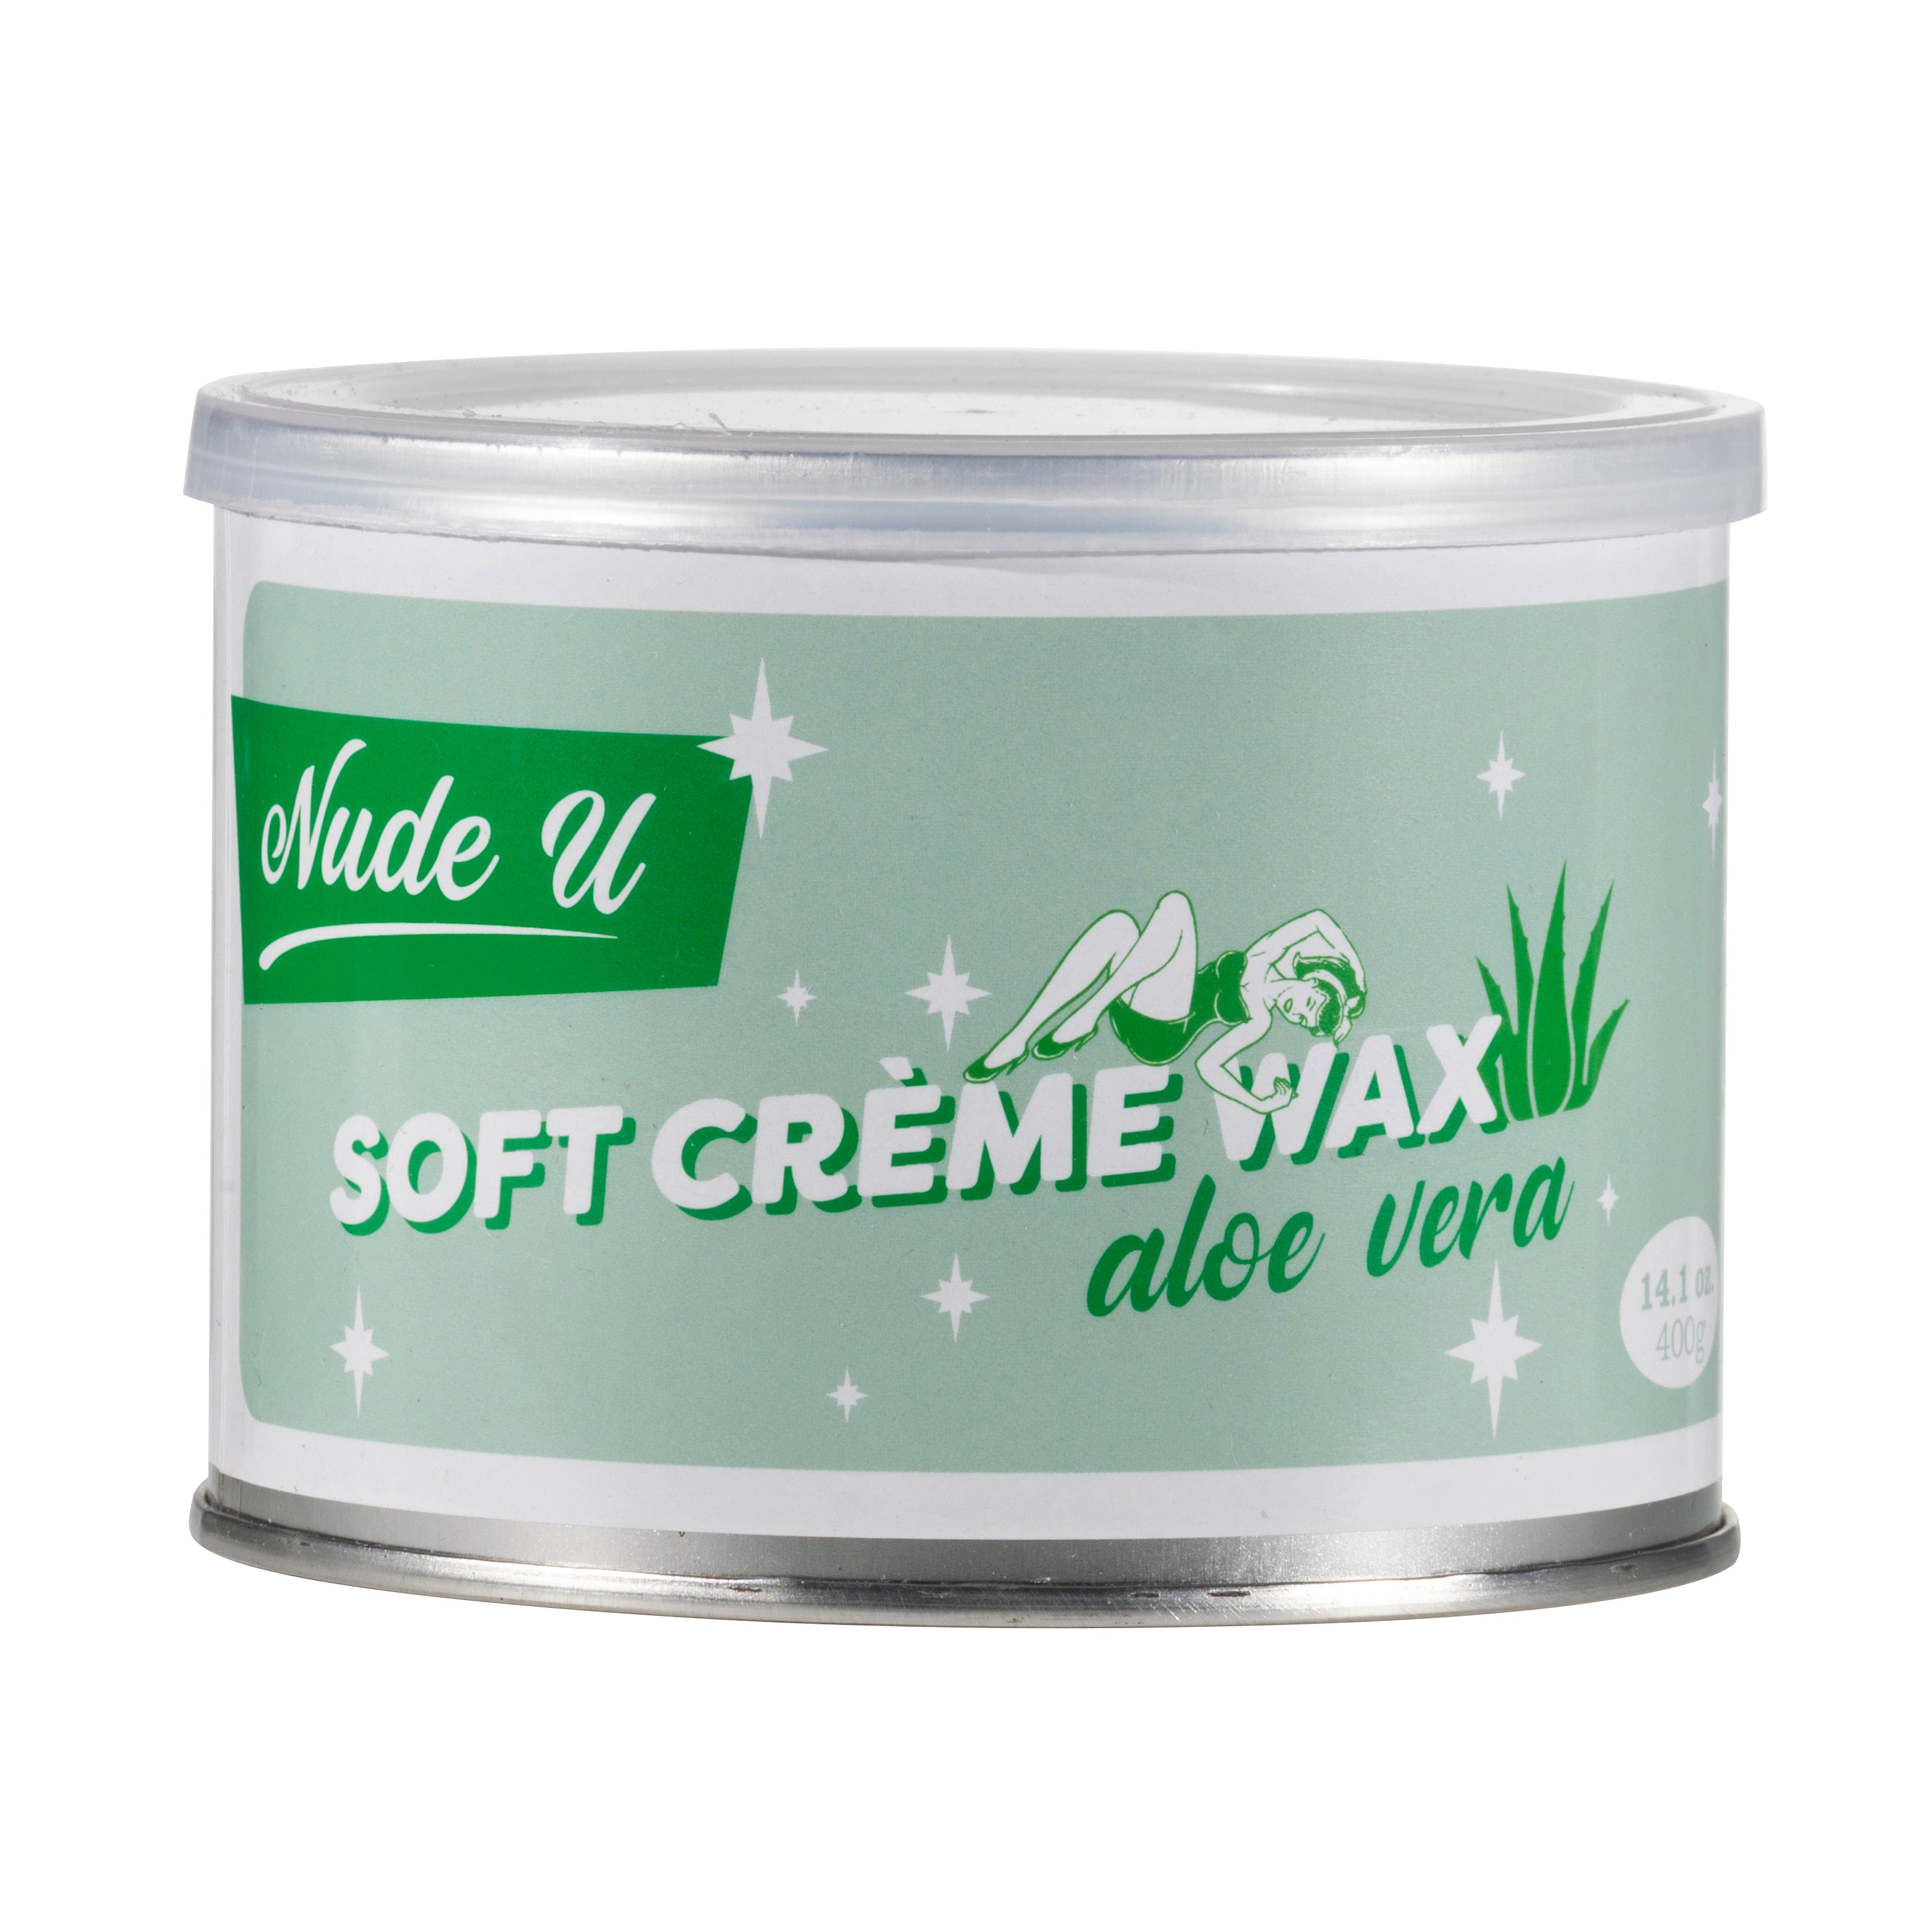 Aloe vera soft creme wax